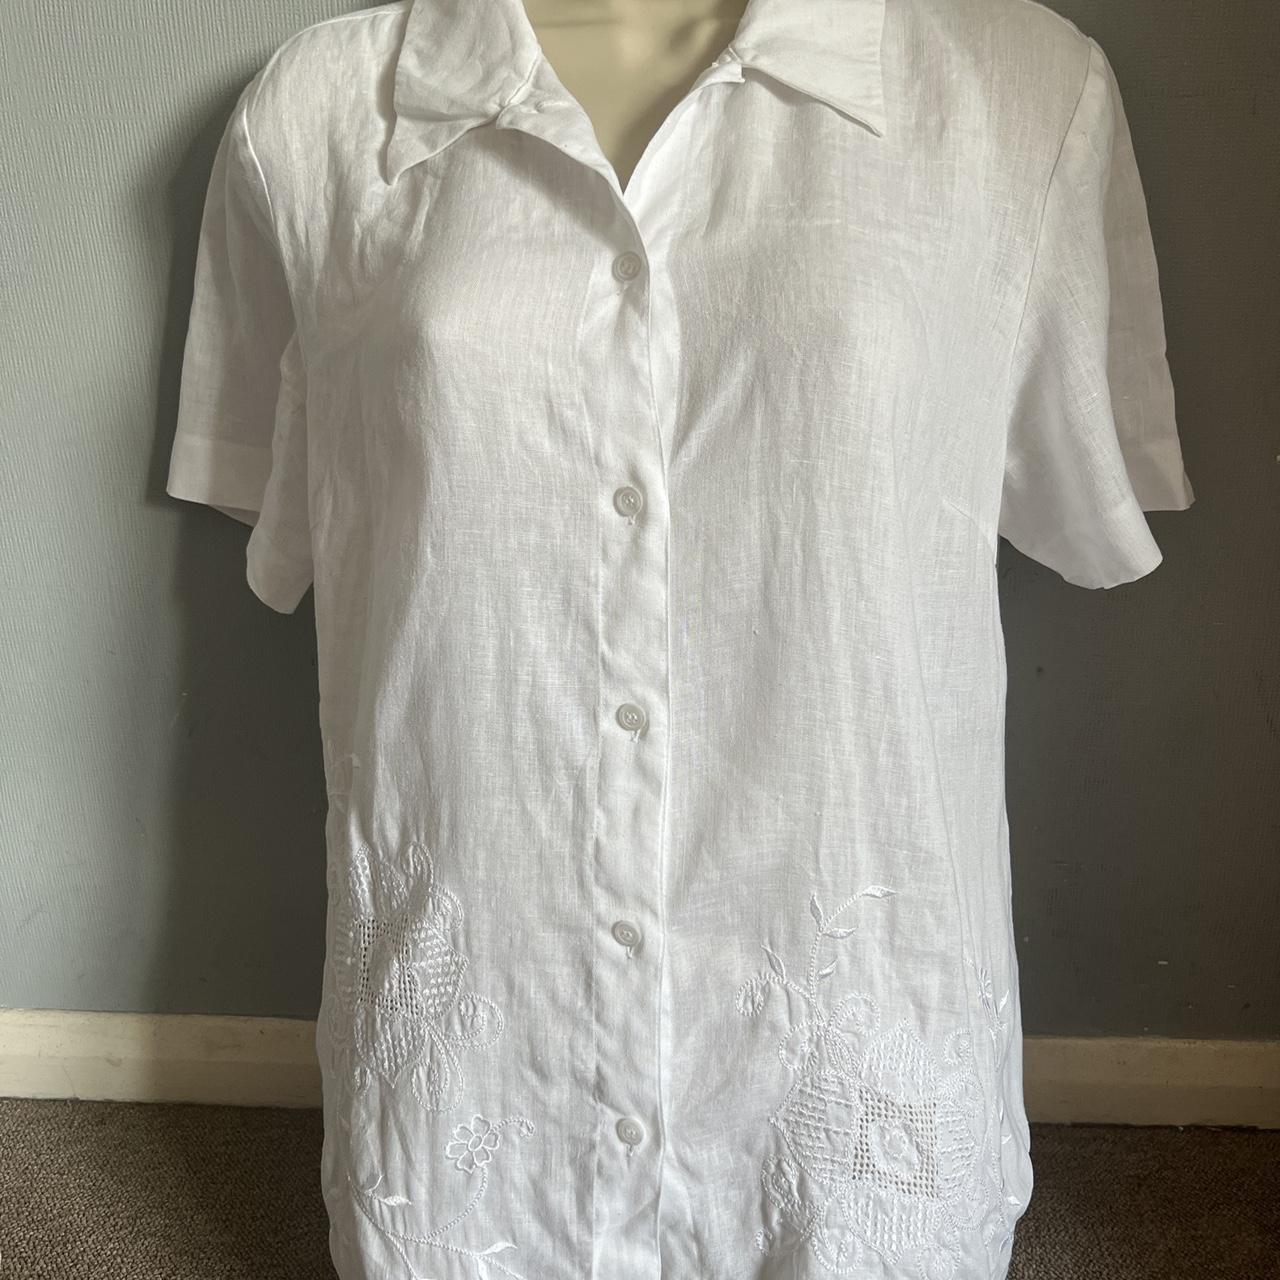 Vintage Laura Ashley linen blouse Cottagecore UK 12... - Depop